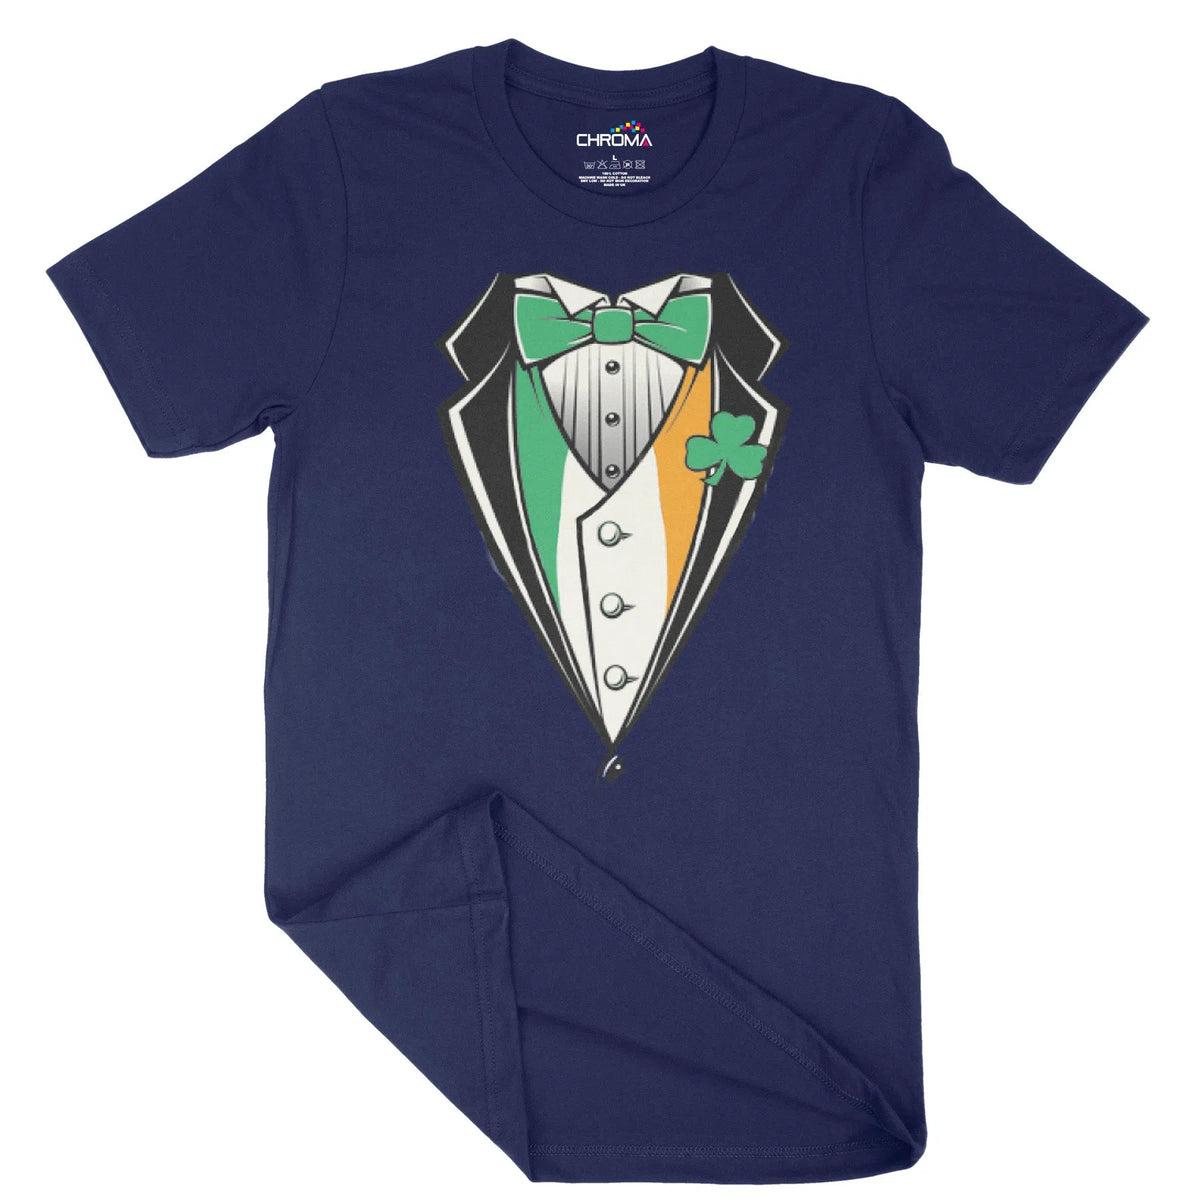 Irish Suit And Bowtie Unisex Adult T-Shirt | Quality Slogan Clothing Chroma Clothing